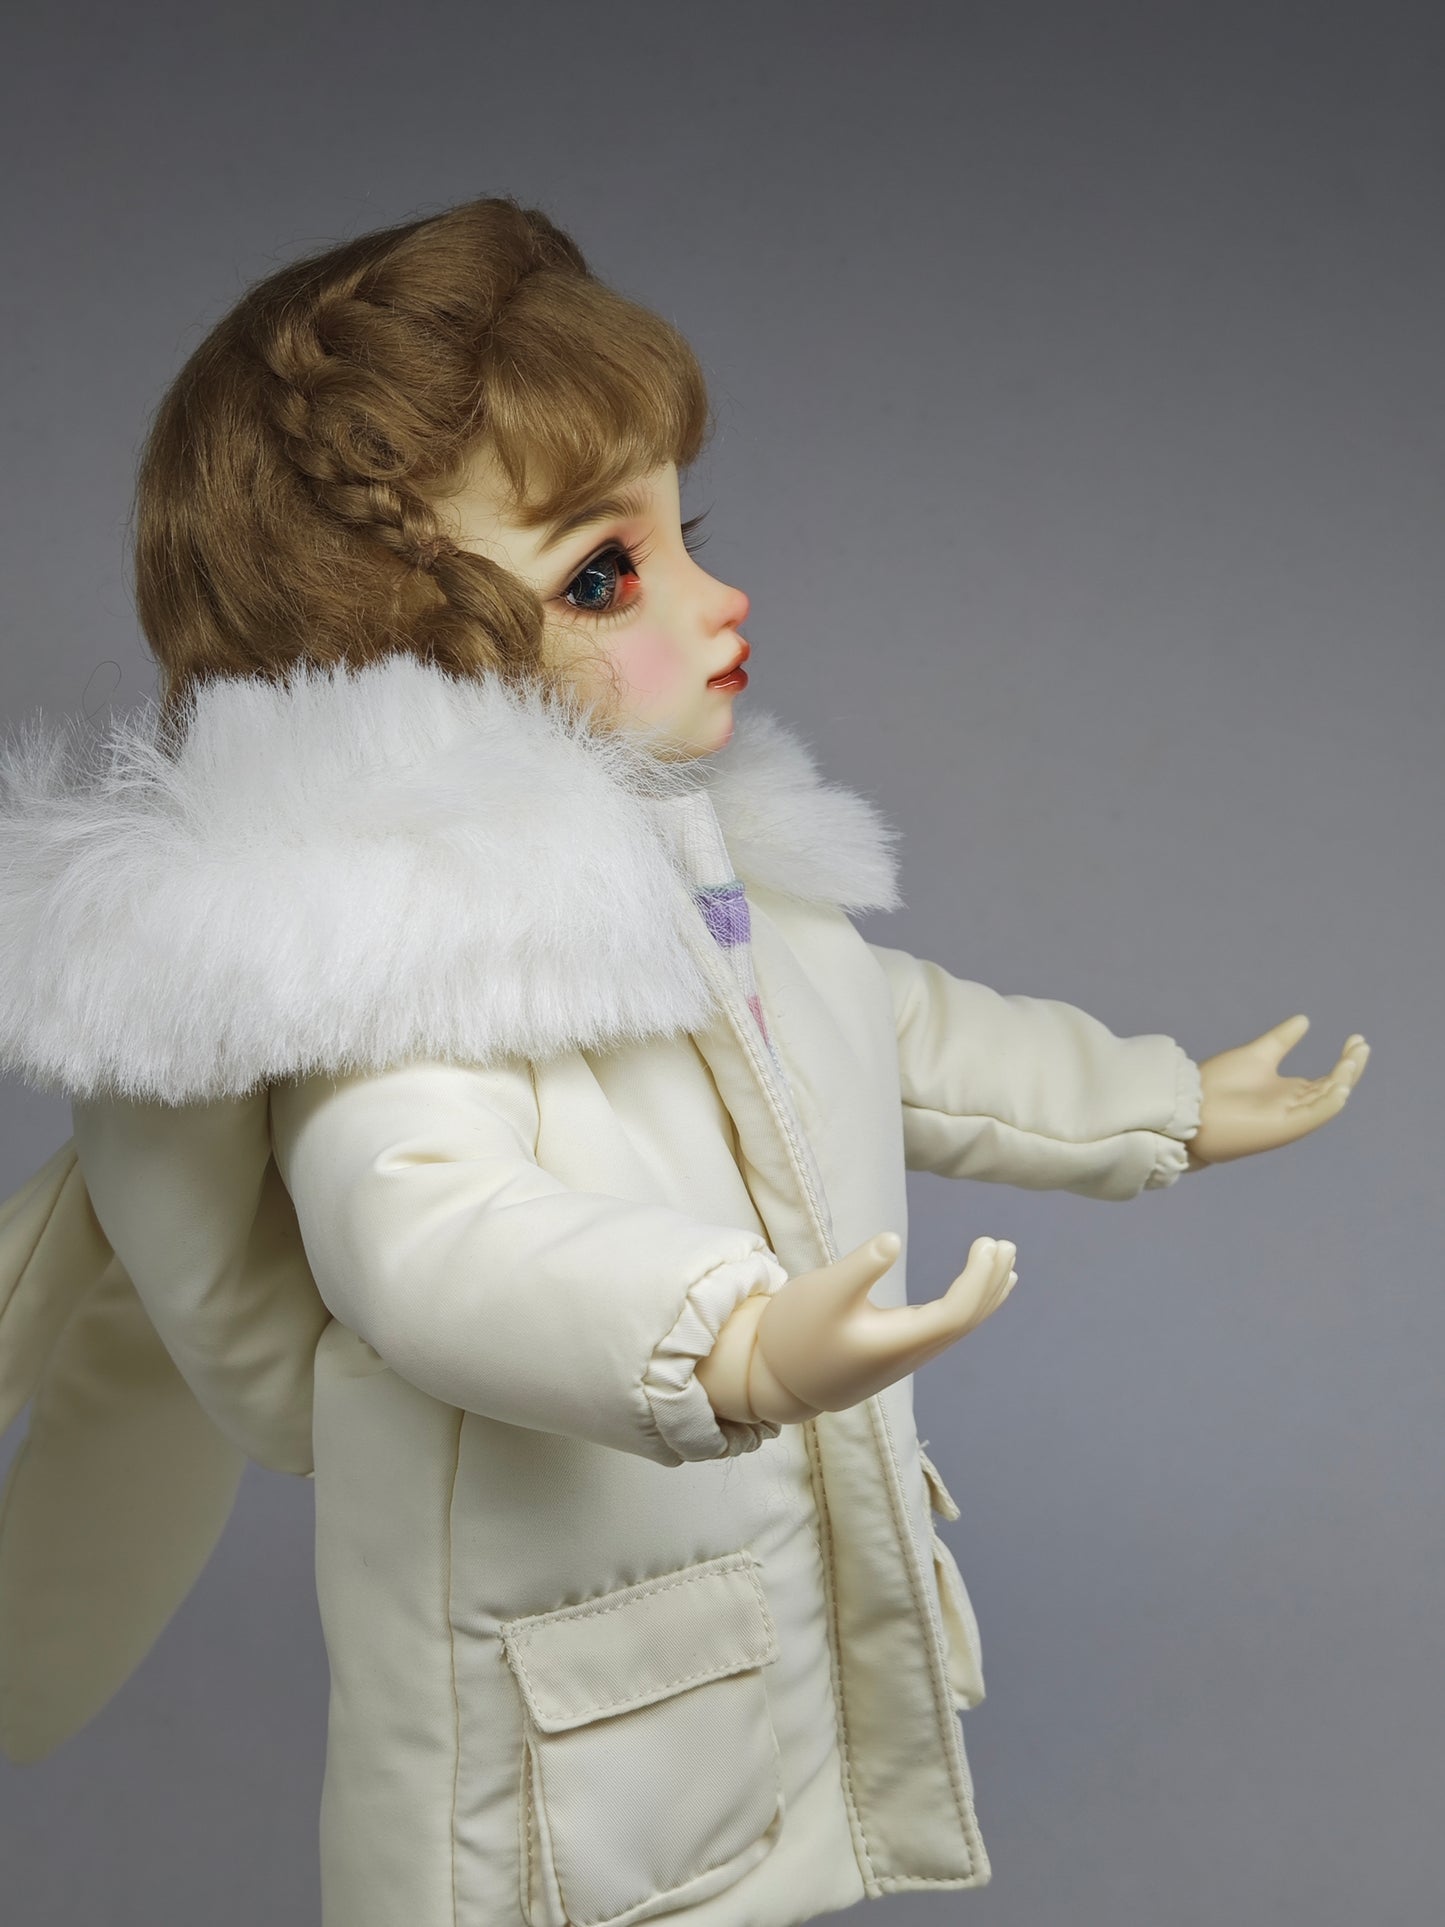 1/6 30cm girl doll Nancy in normal skin with fullset